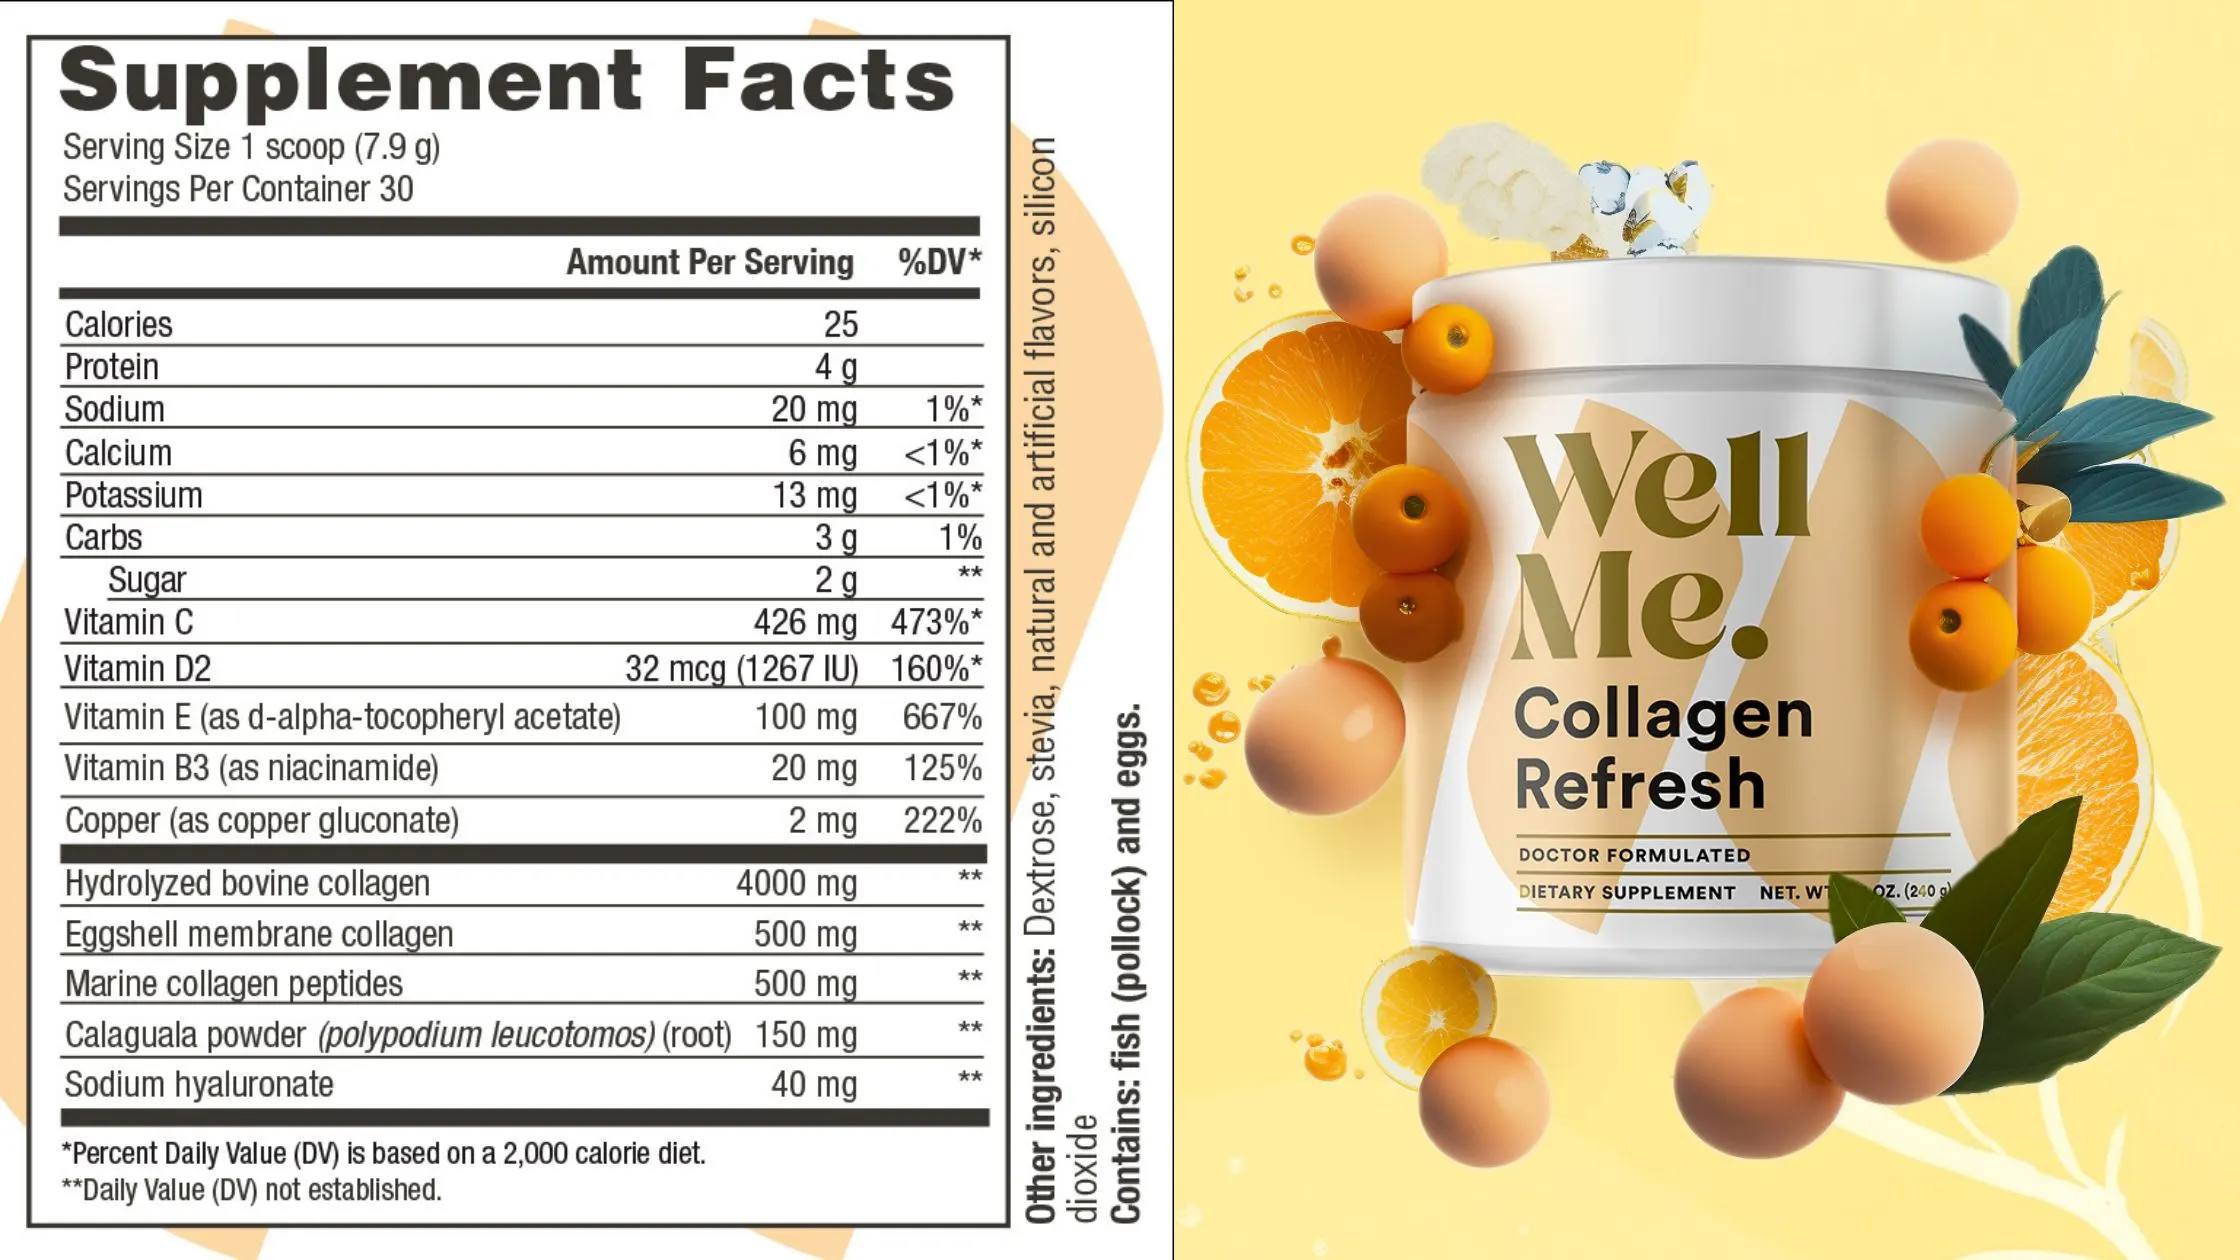 WellMe Collagen Refresh supplement facts